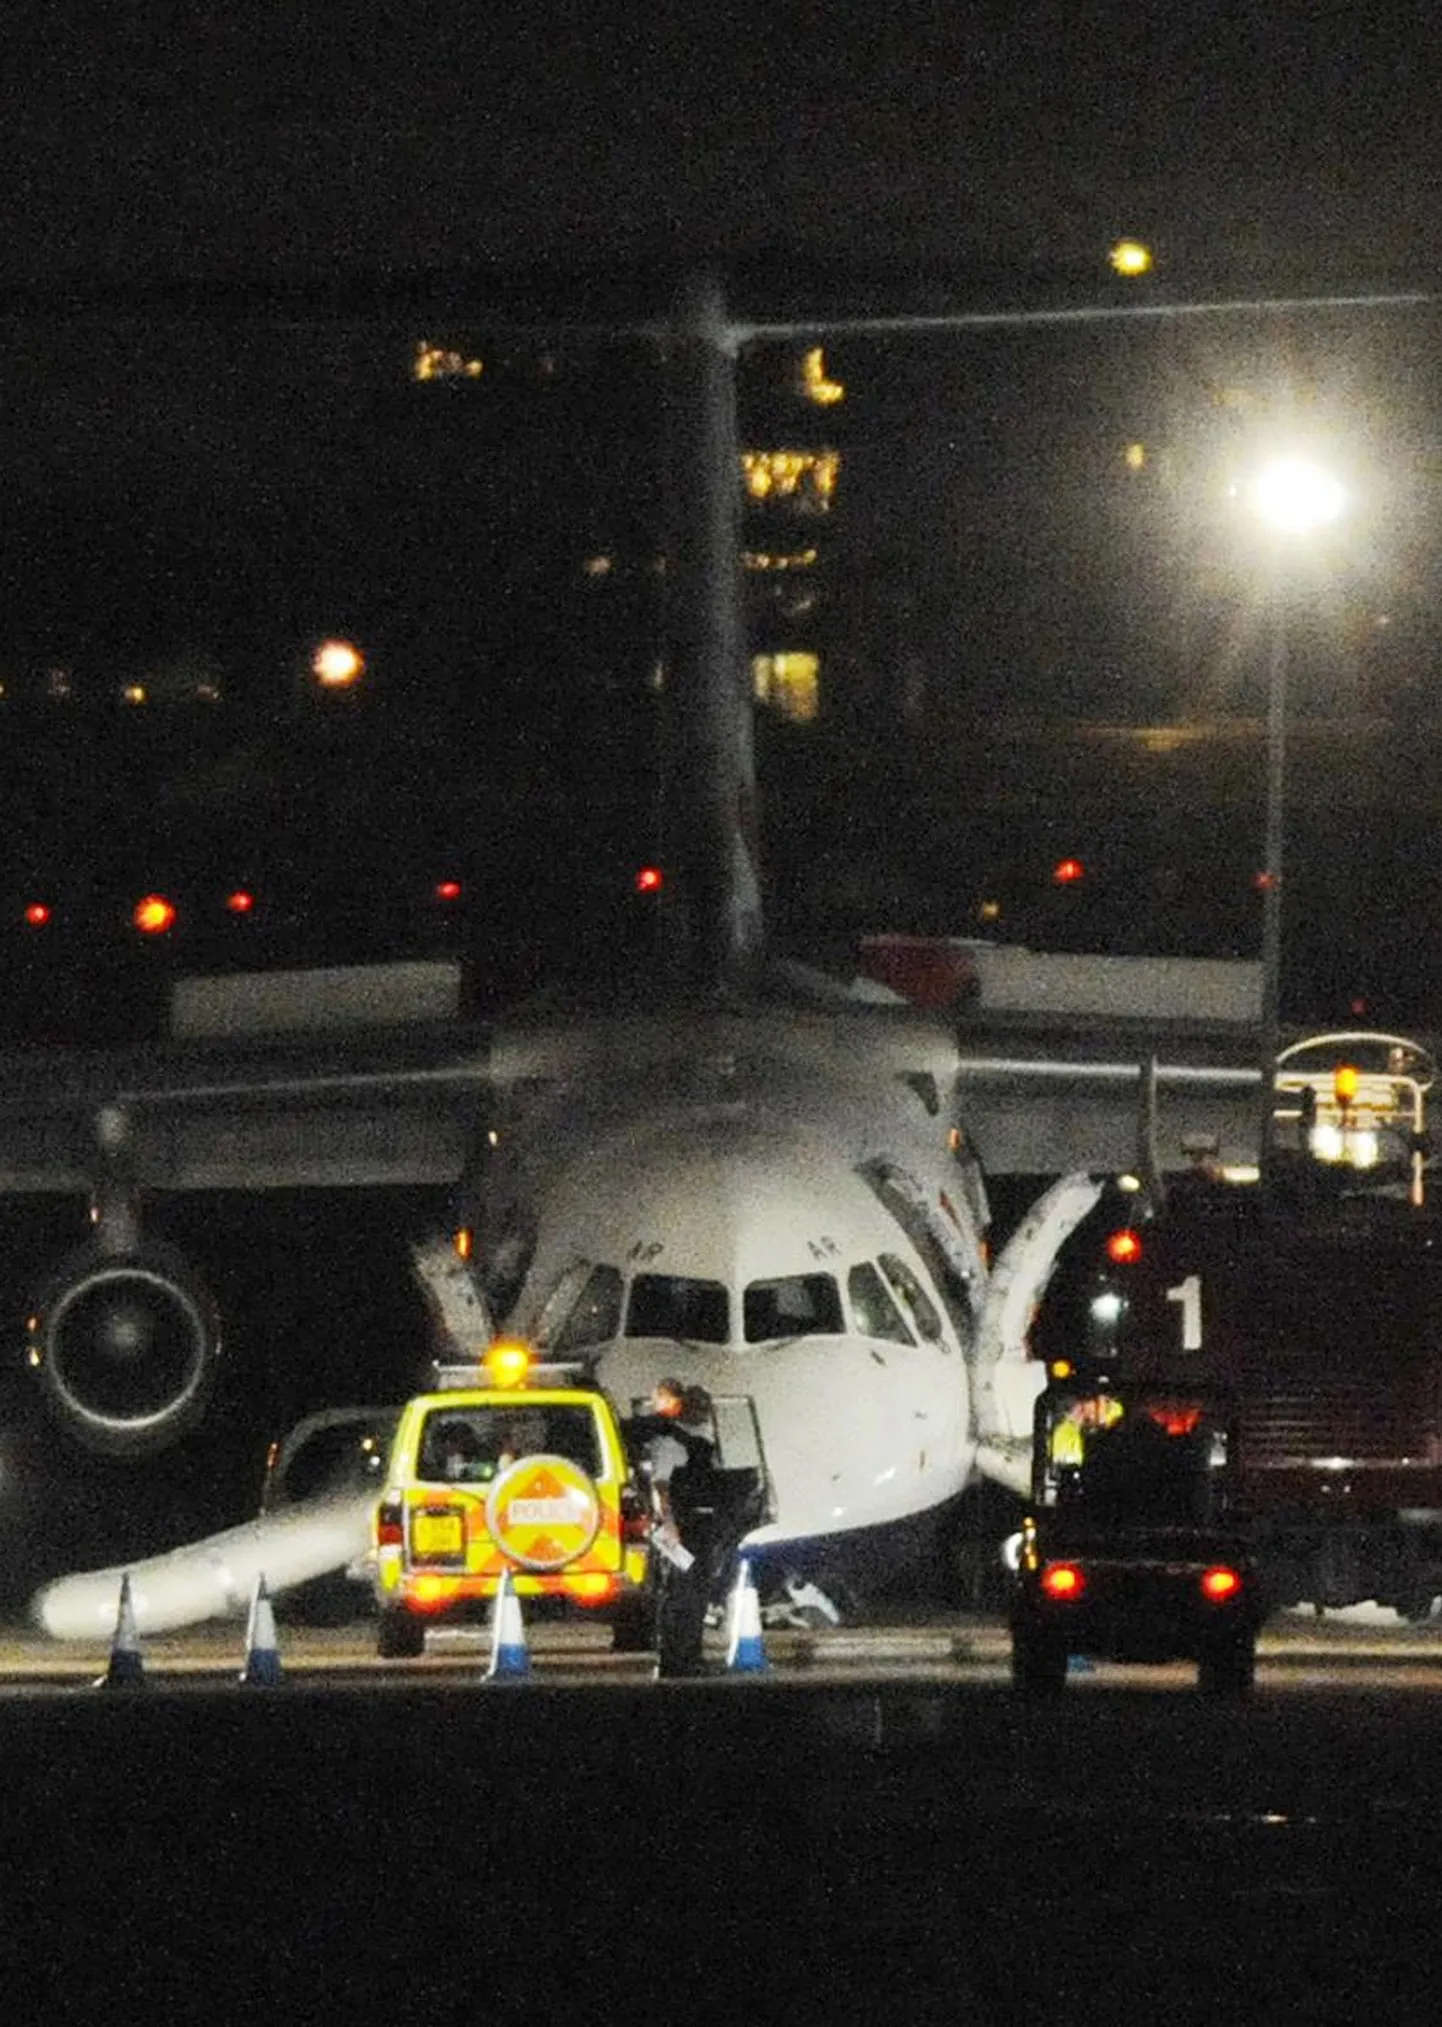 British Airwaysile kuuluv reisilennuk sooritas Londoni City Airportil ebaõnnestunud hädamaandumise.